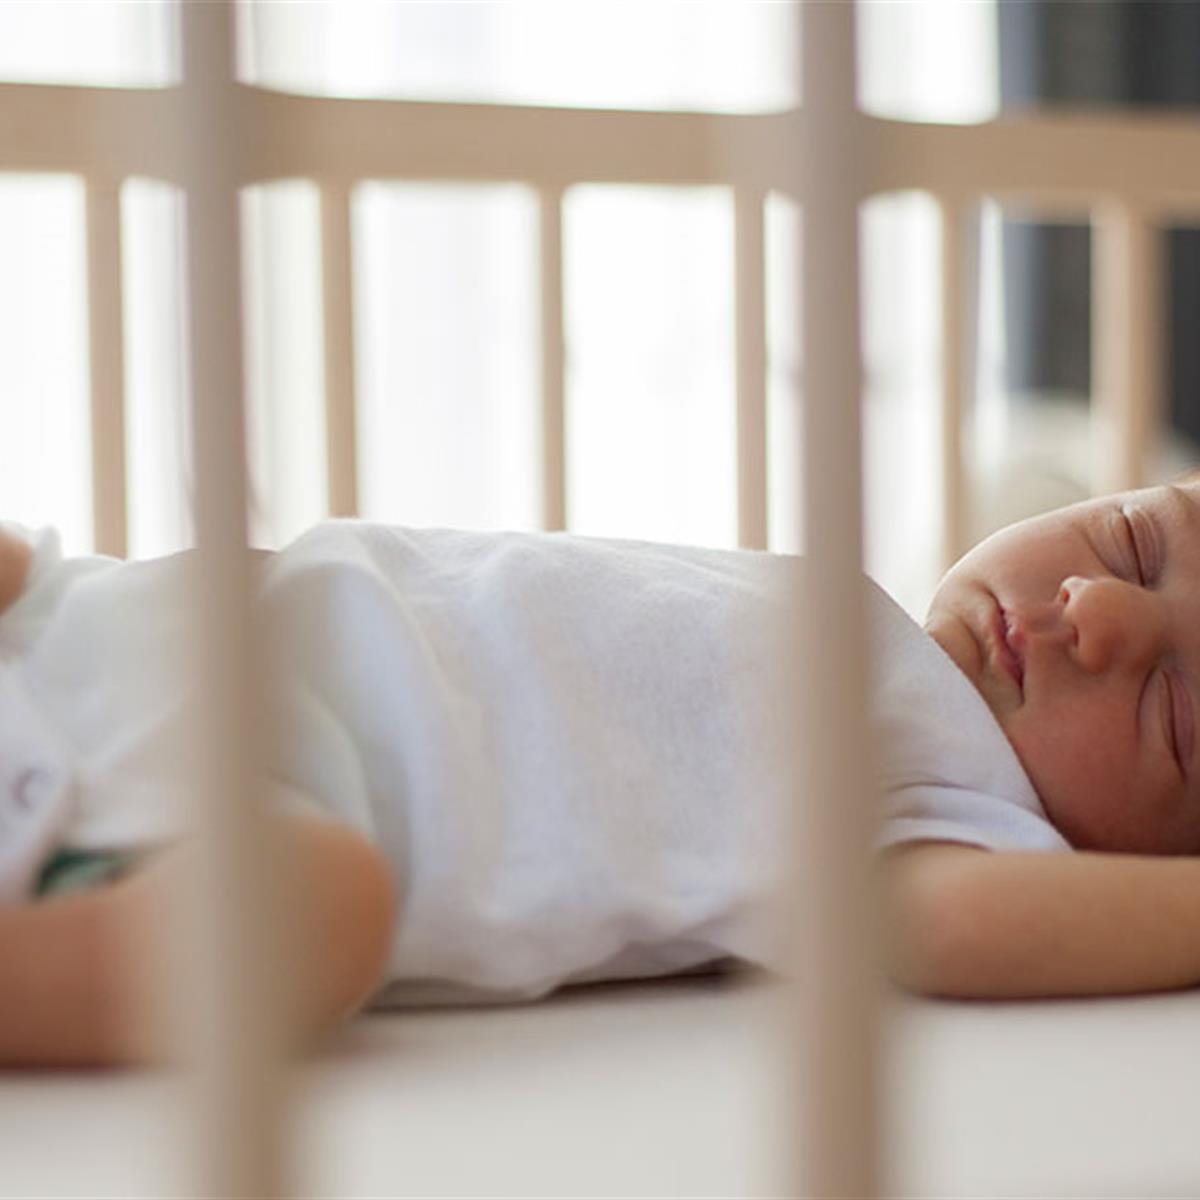 Saco de dormir para el bebé: ¿Cuáles son sus ventajas y desventajas?